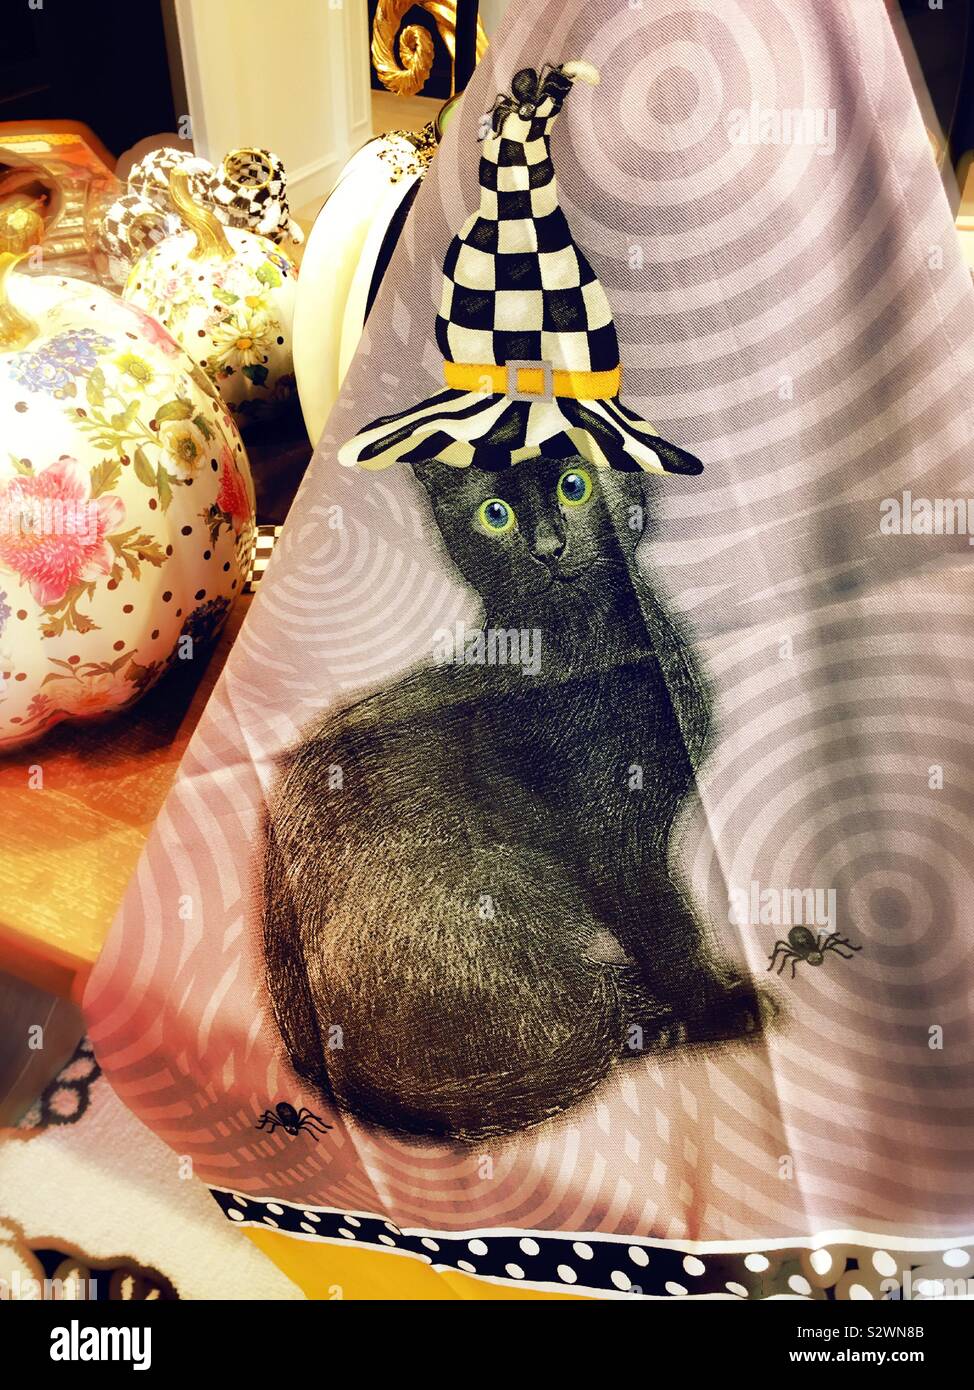 Thème de l'Halloween, serviette avec un chat noir portant un damier noir et  blanc chapeau de sorcier. Mackenzie Childs, Soho, NEW YORK, USA Photo Stock  - Alamy